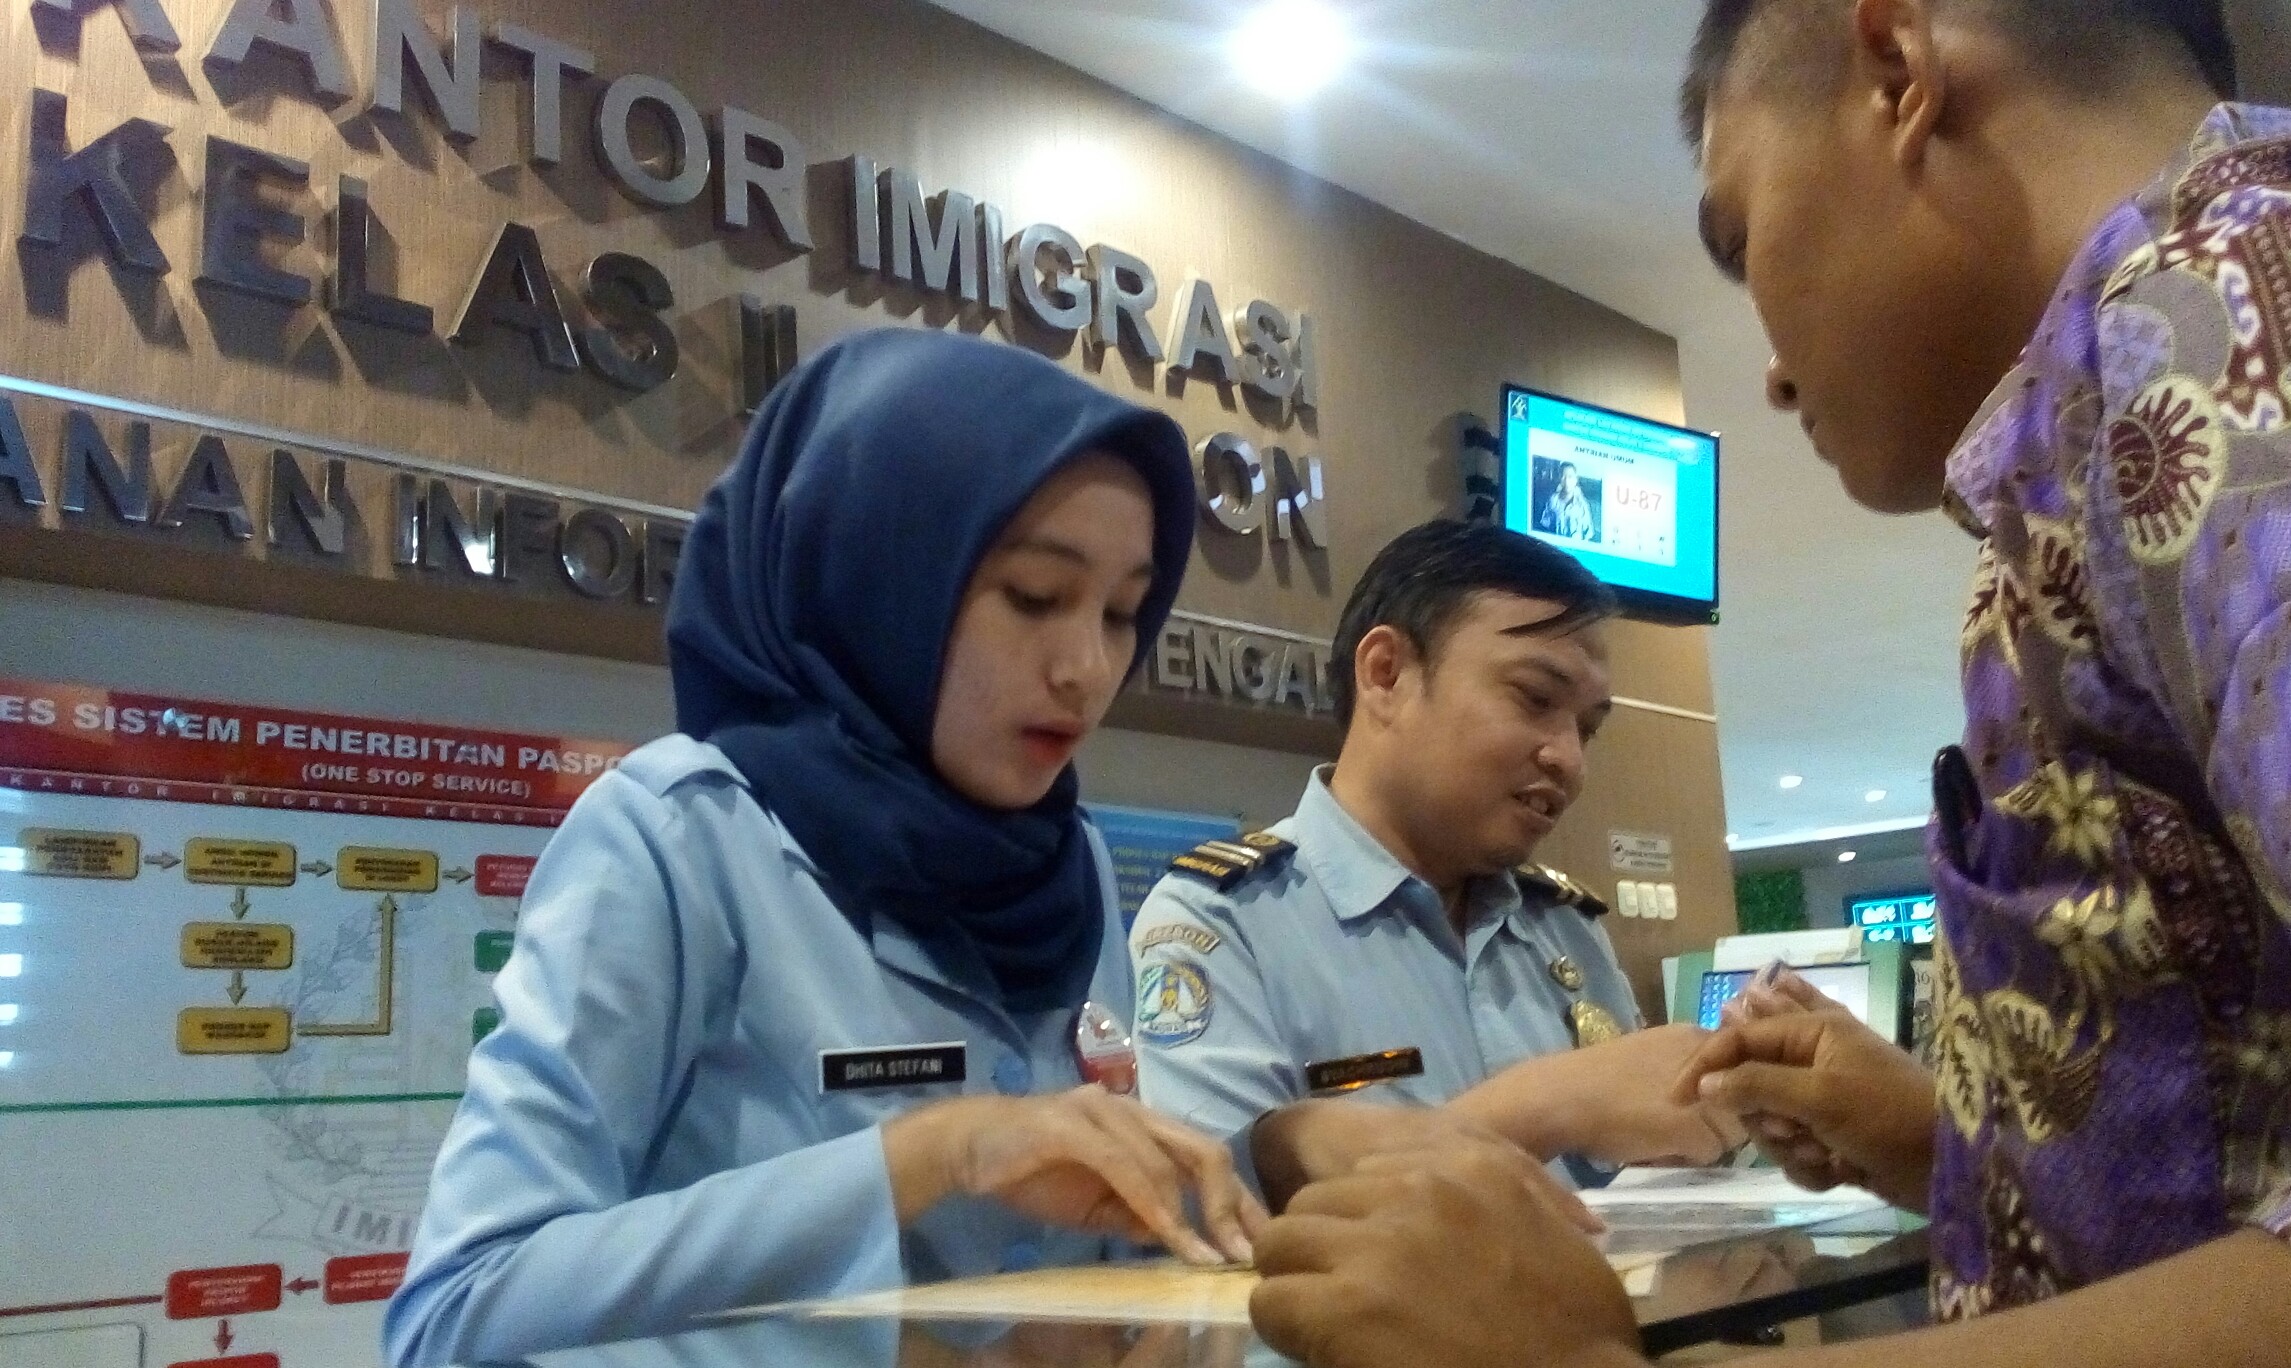 Alasan Jokowi Ancam Ganti Dirjen, Geram dengan Masalah Imigrasi di Indonesia